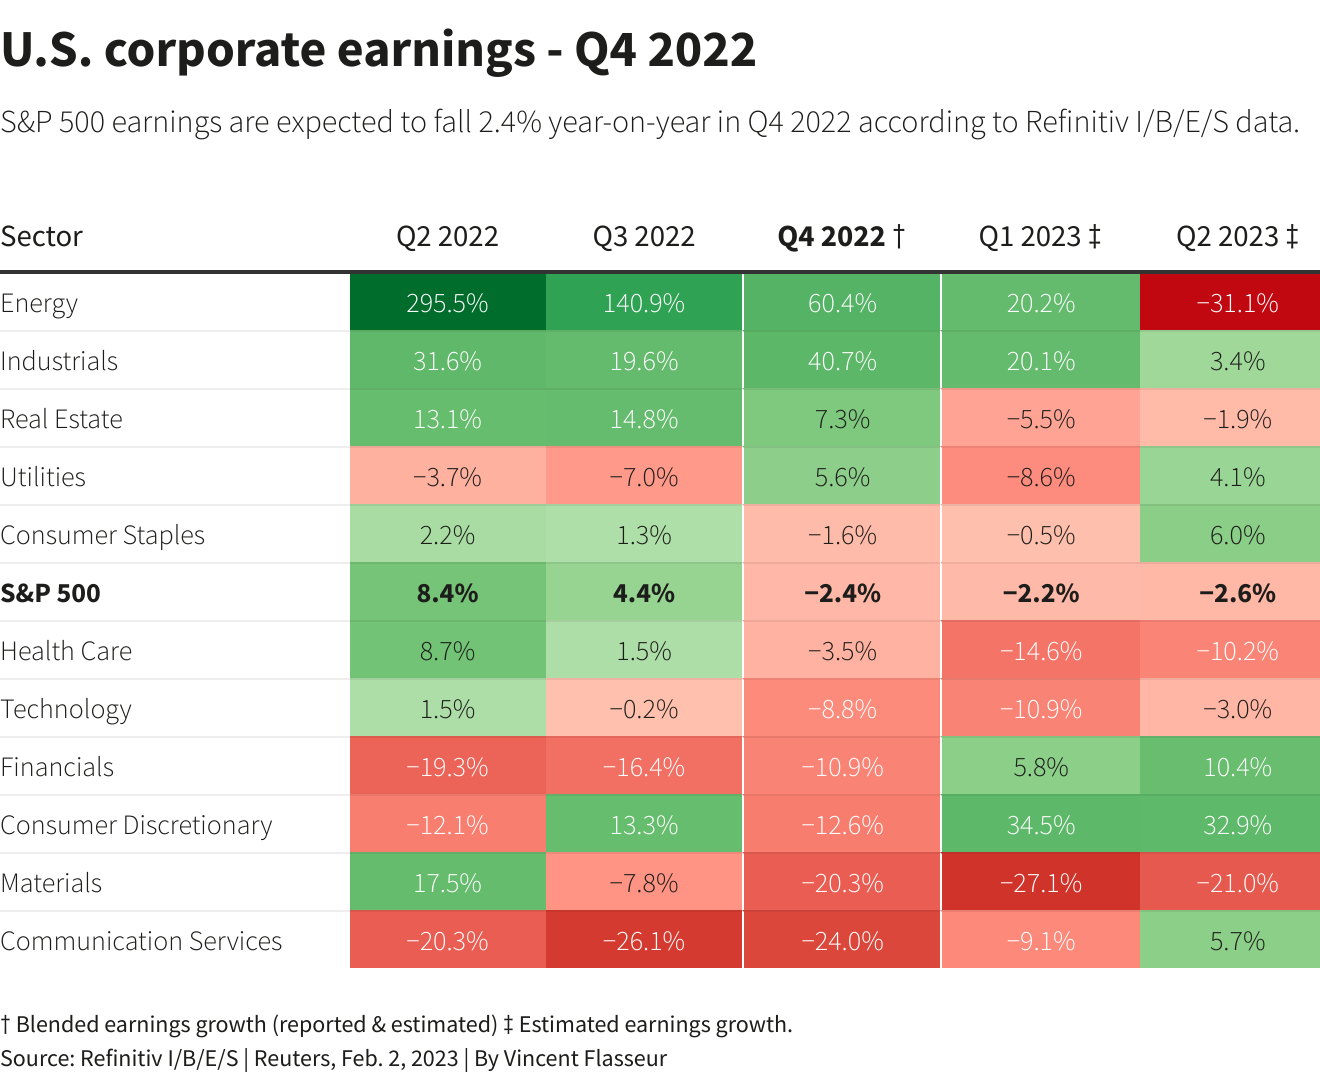 הרווחים של החברות האמריקאיות - רבעון 4, 2022 